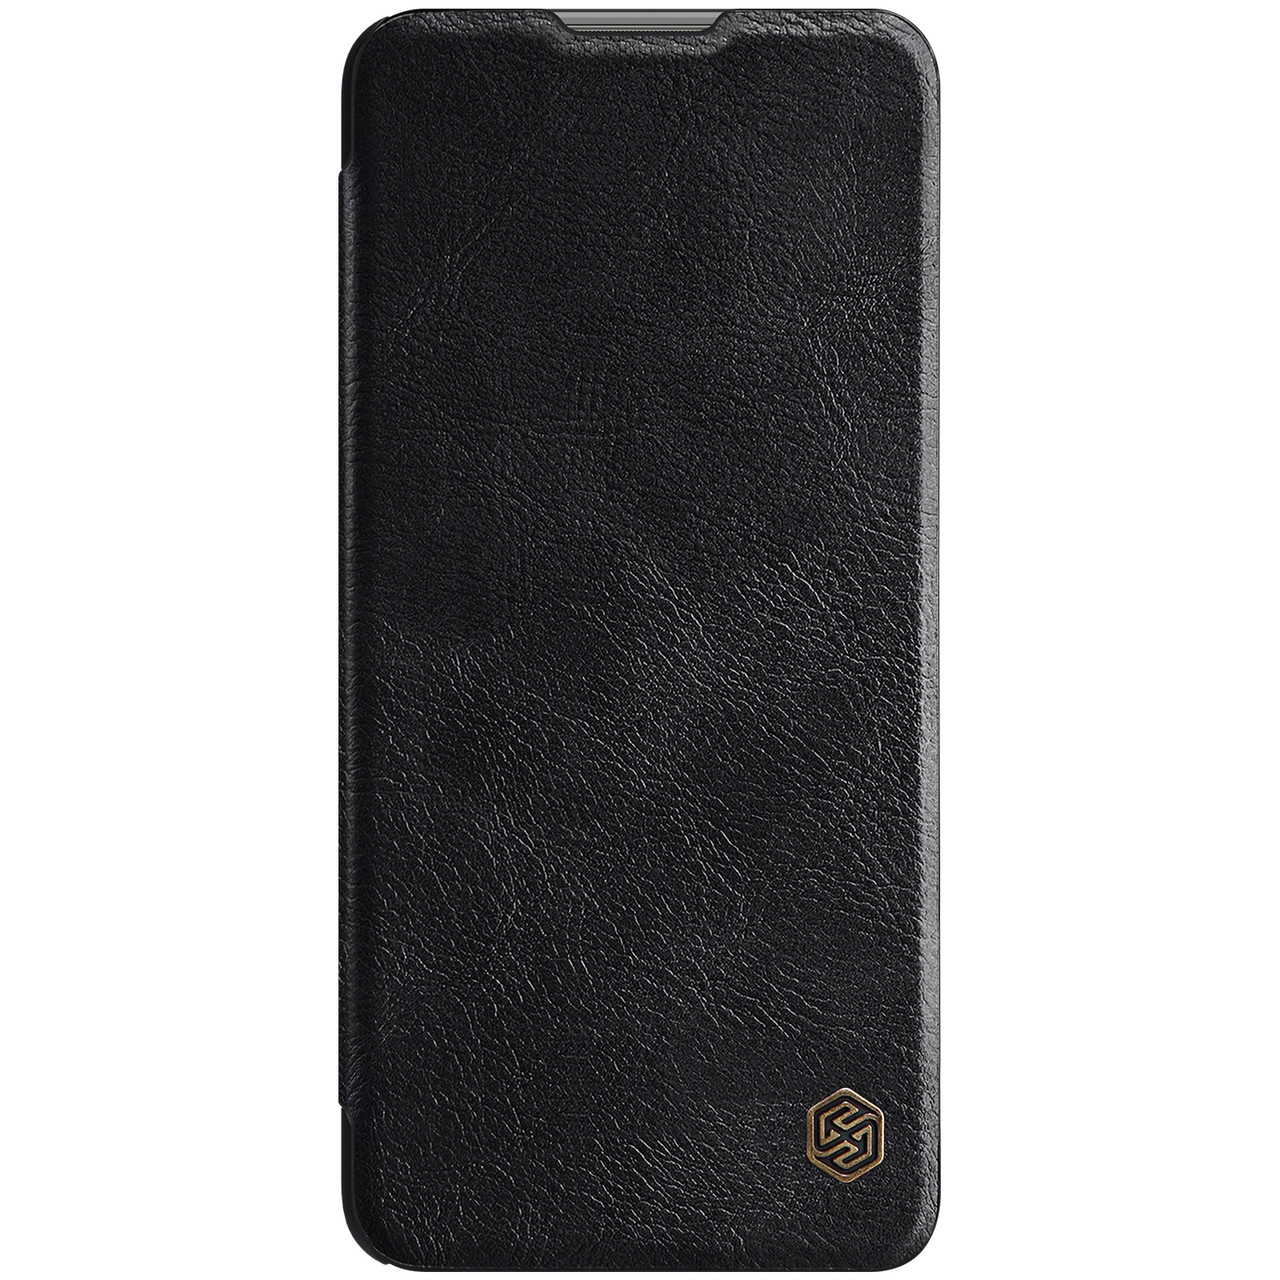 Захисний чохол-книжка Nillkin для Xiaomi Mi 11 Lite Qin leather case Black Чорний